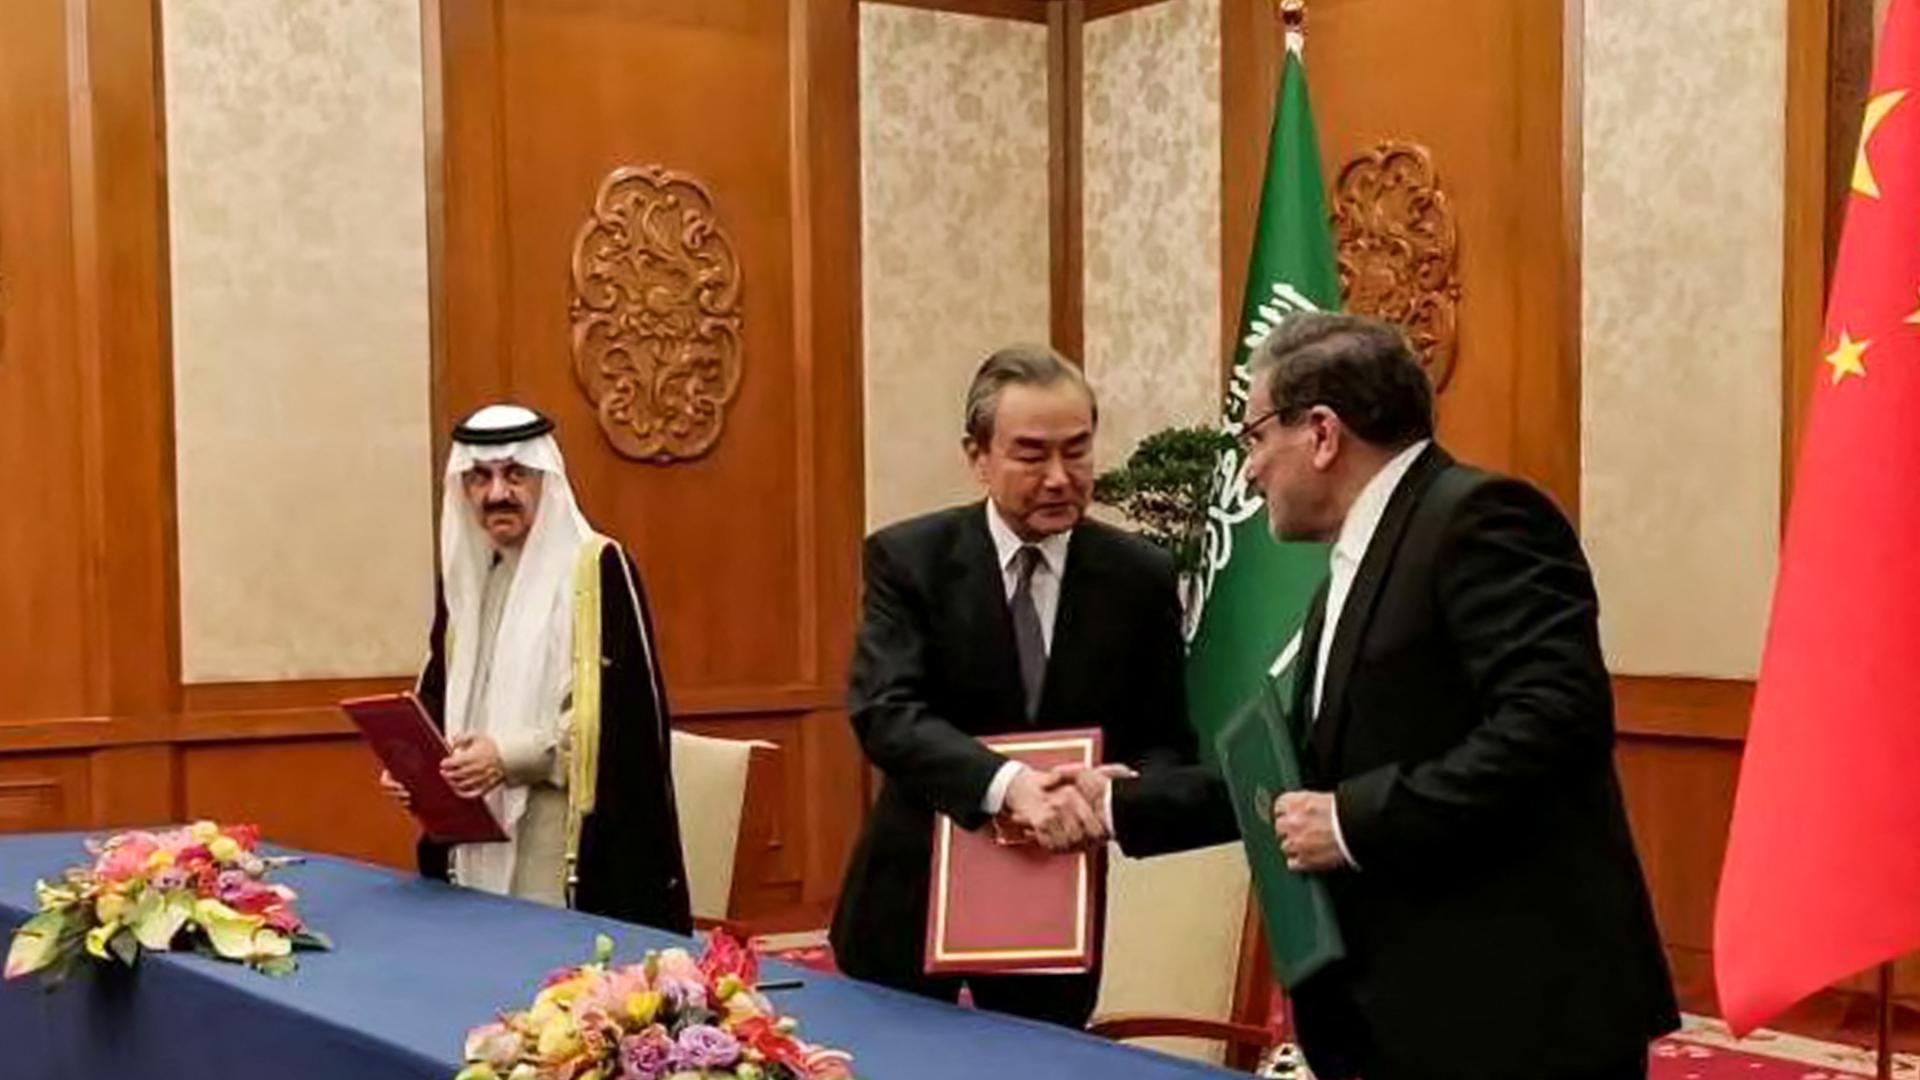 Zu sehen sind, von links nach rechts, der saudische Sicherheitsratschef al-Aiban, Chinas Spitzendiploman Wang Yi, und der Chef von Irans Sicherheitsrat, Schamchani.